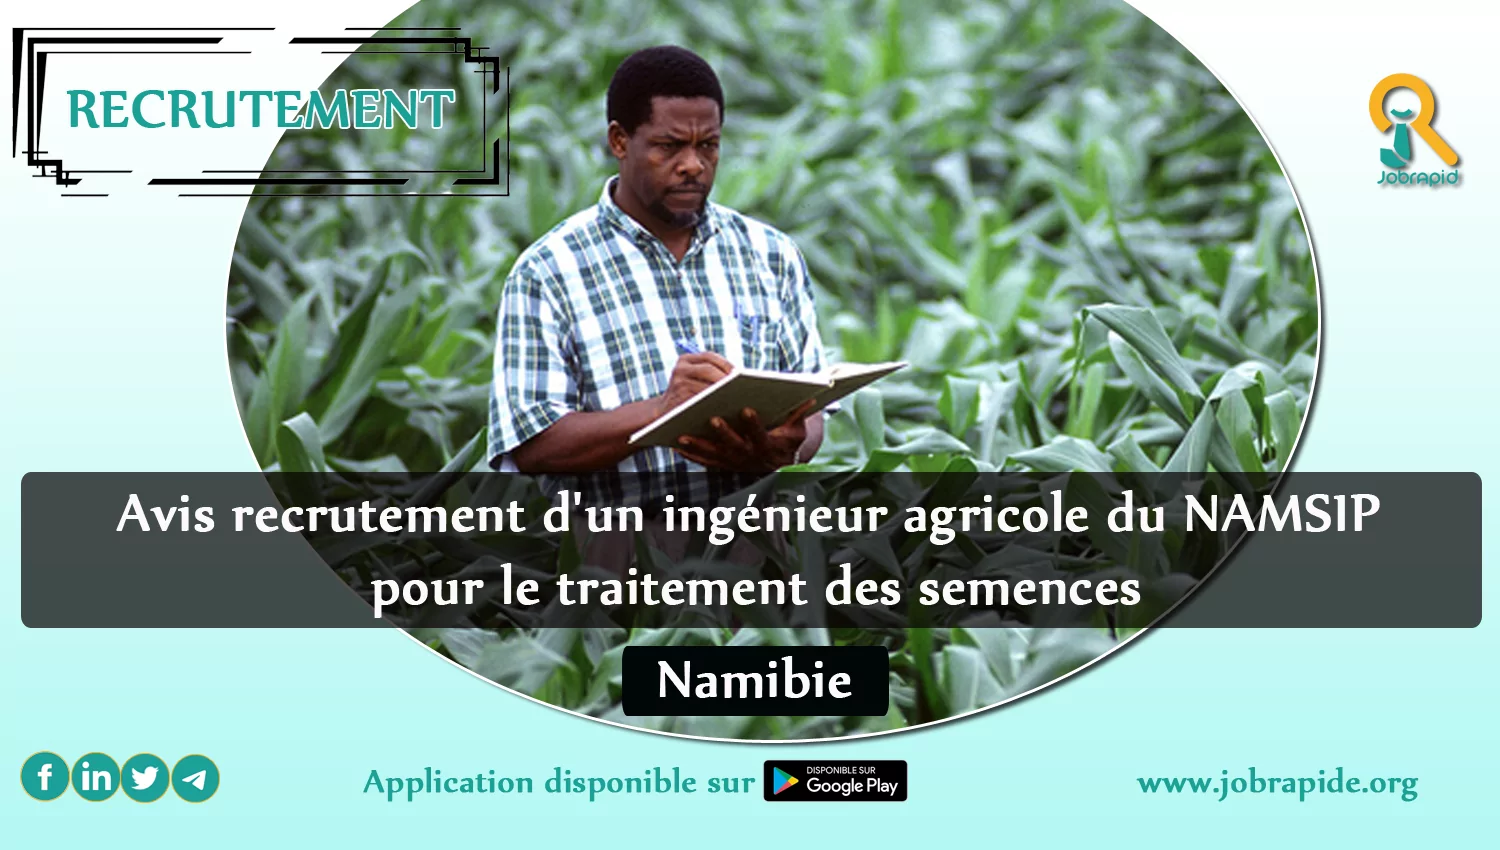 Avis recrutement d’un ingénieur agricole du NAMSIP pour le traitement des semences, Namibie